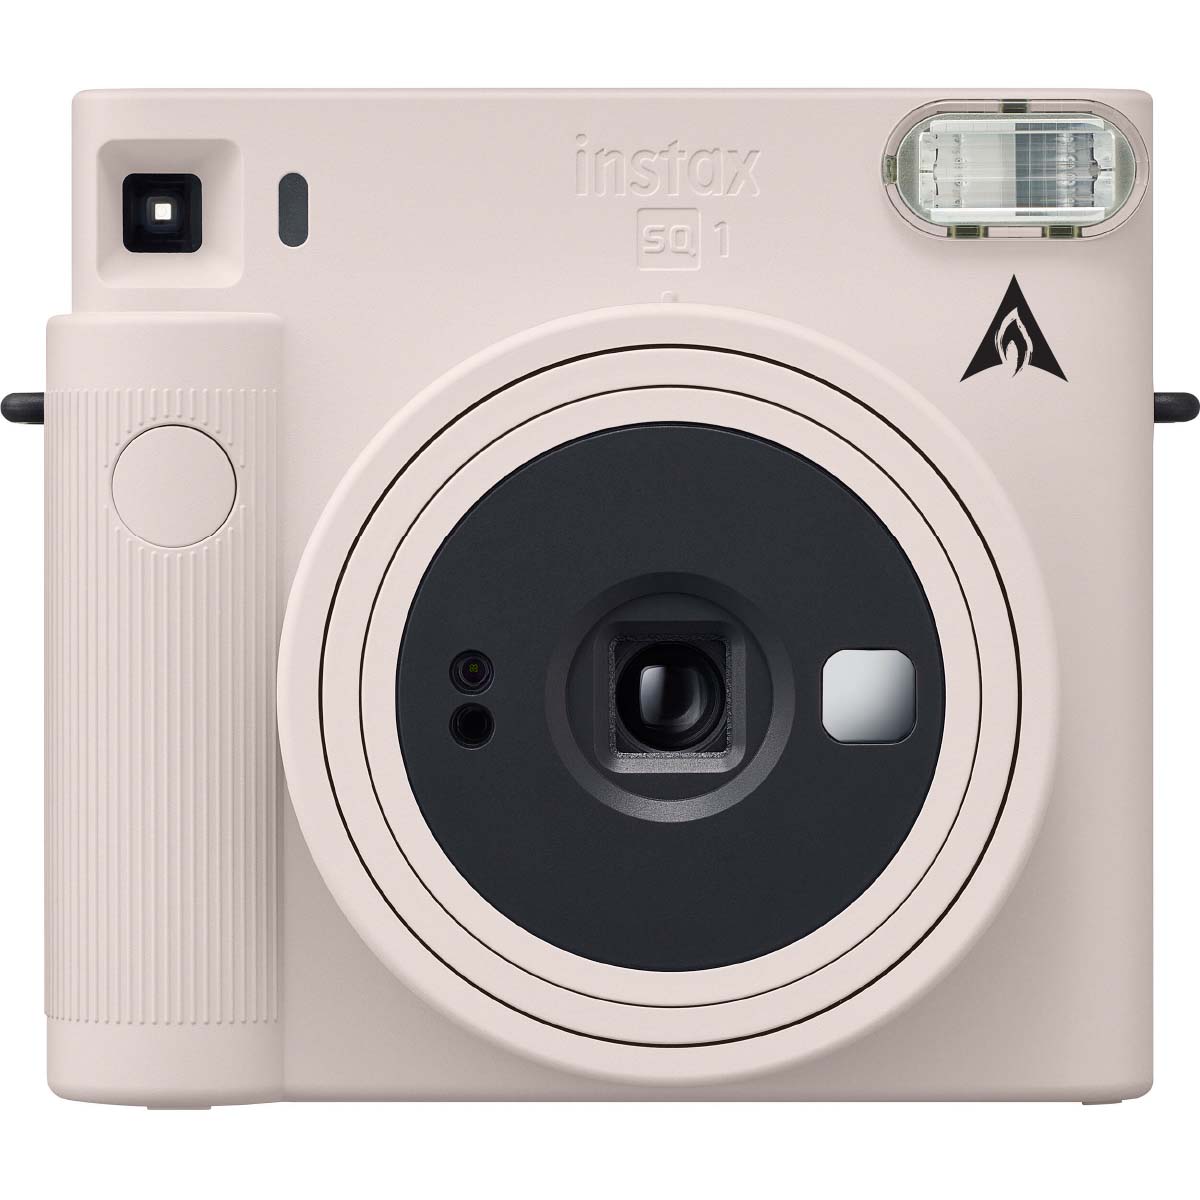 
                  
                    FujiFilm Instax Square SQ1 Instant Camera w/ 10 Count Film Chalk White
                  
                